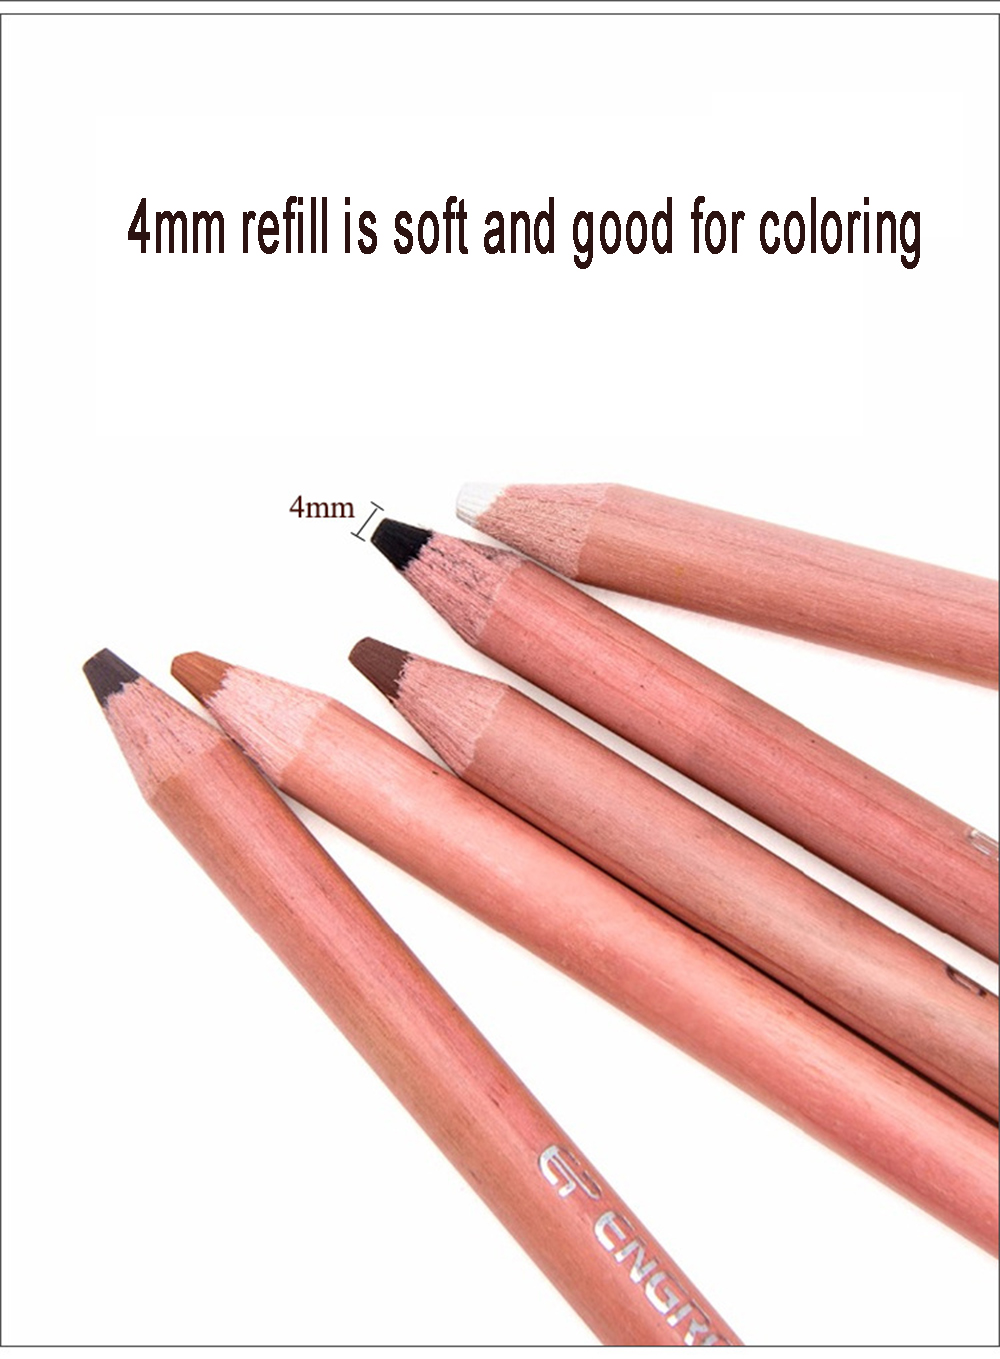 Bview-12-colors-Charcoal-Colored-Pencil-Soft-Pastel-Pencil-Portrait-Landscape-Wooden-Professional-Ar-1722407-6